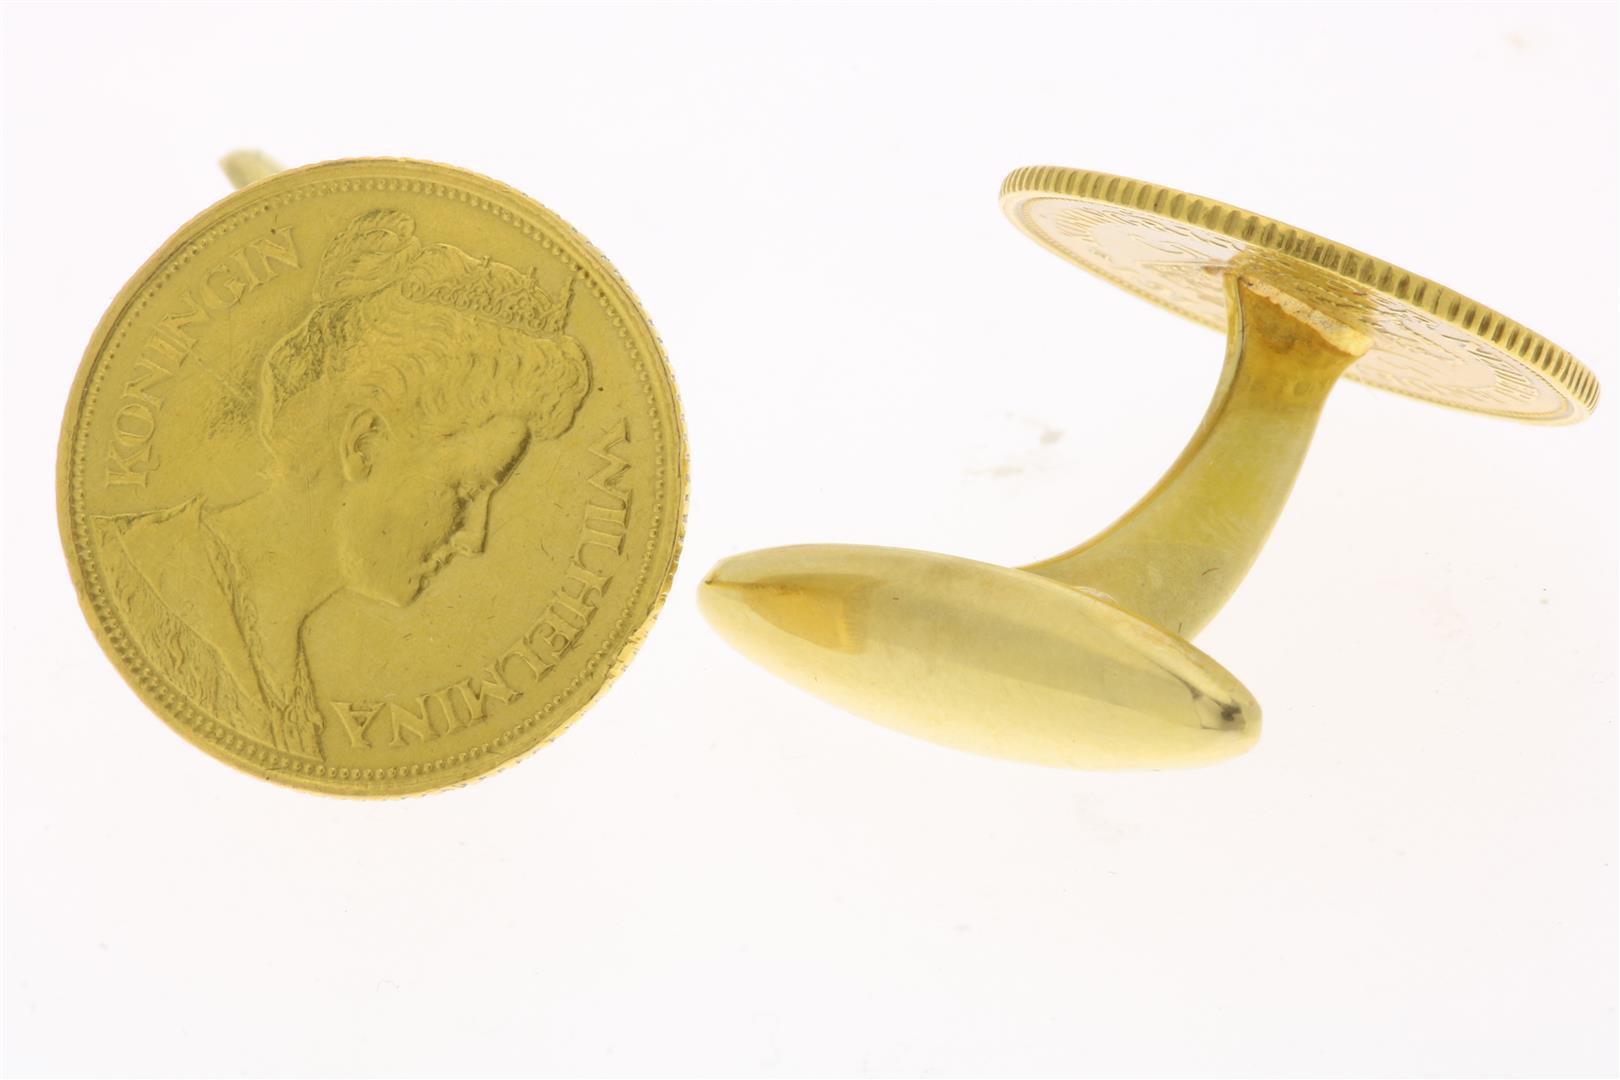 Set of yellow gold cufflinks of 5 guilder coin, Queen Wilhelmina, 1912, grade 585/000, gross weight